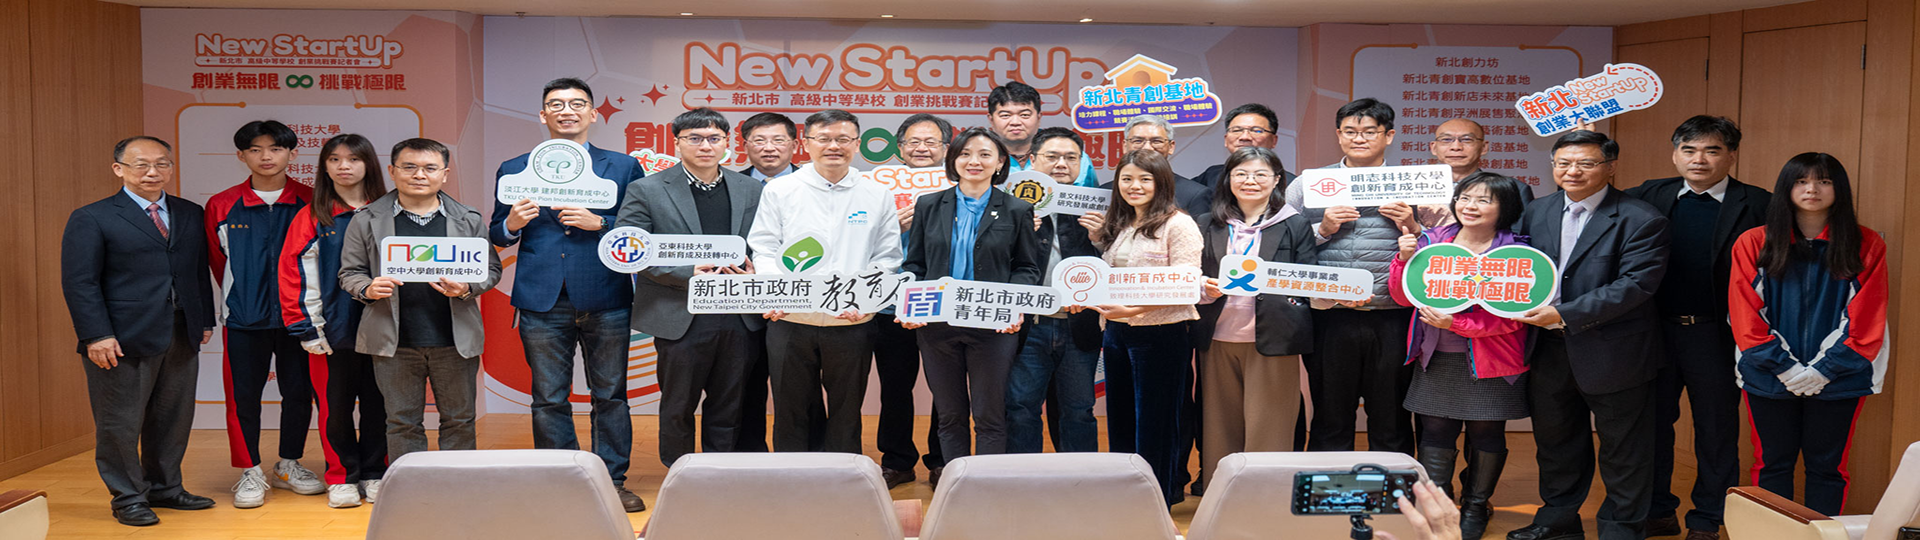 新北首屆New StartUp創業挑戰賽 歡迎學子來創業